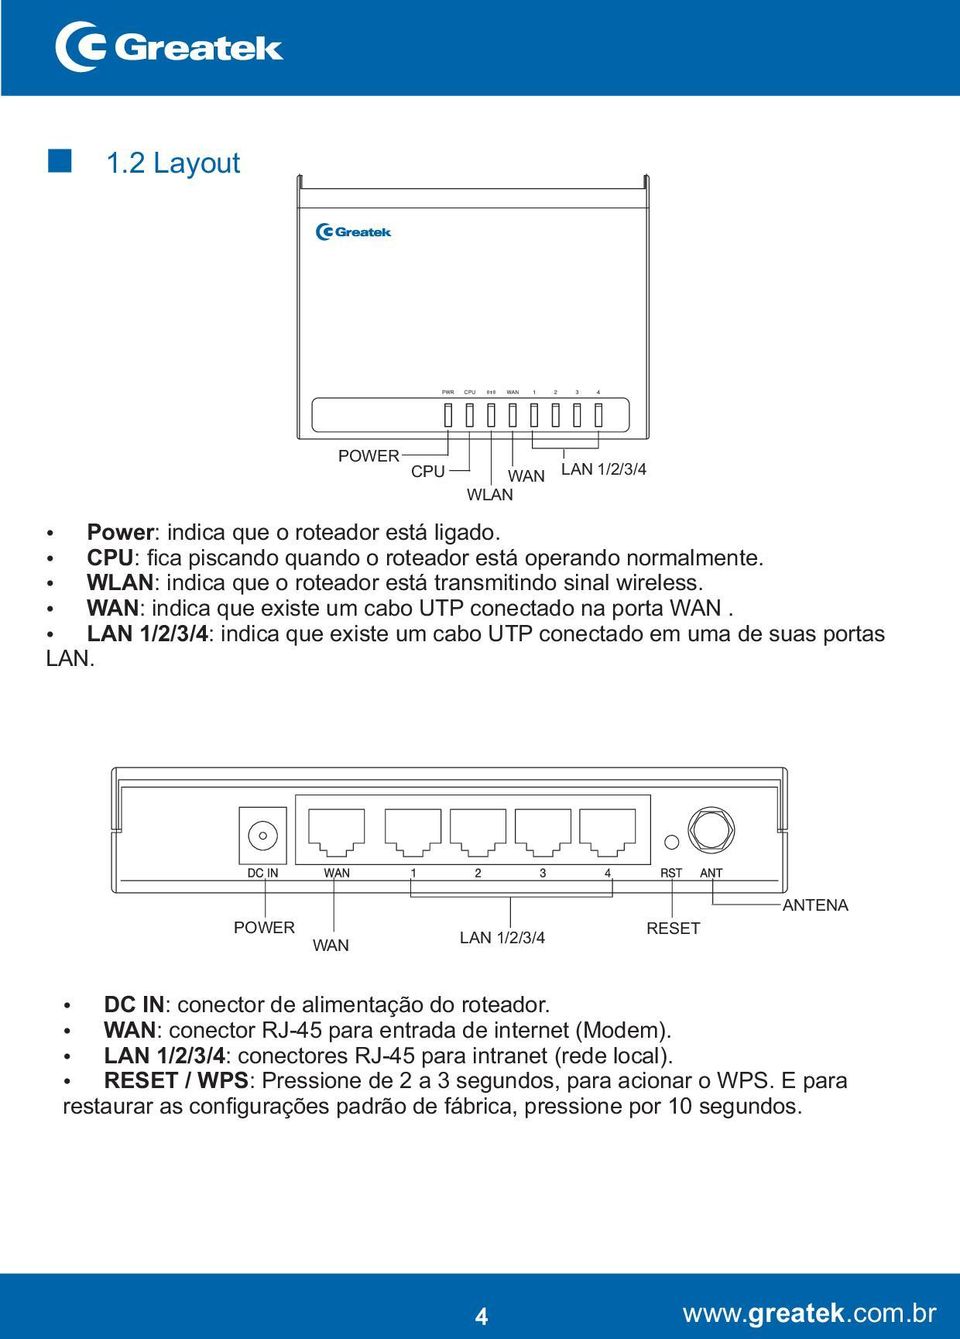 Ÿ LAN 1/2/3/4: indica que existe um cabo UTP conectado em uma de suas portas LAN. POWER WAN LAN 1/2/3/4 RESET ANTENA Ÿ DC IN: conector de alimentação do roteador.